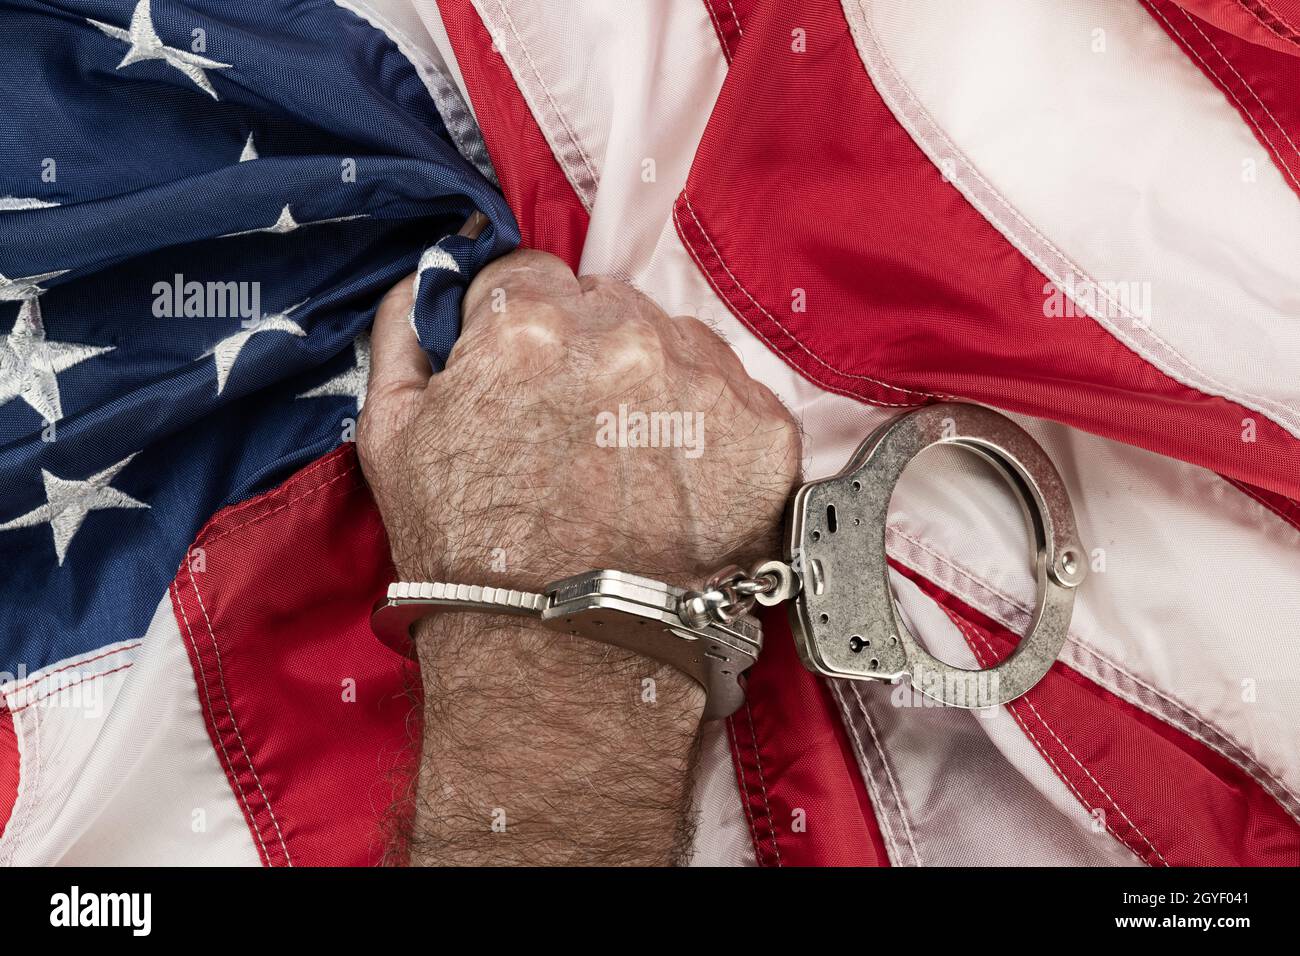 Un uomo in manette afferra la bandiera americana nella frustrazione e nella rabbia mentre oppressione e burocrazia impediscono la sua libertà. Foto Stock